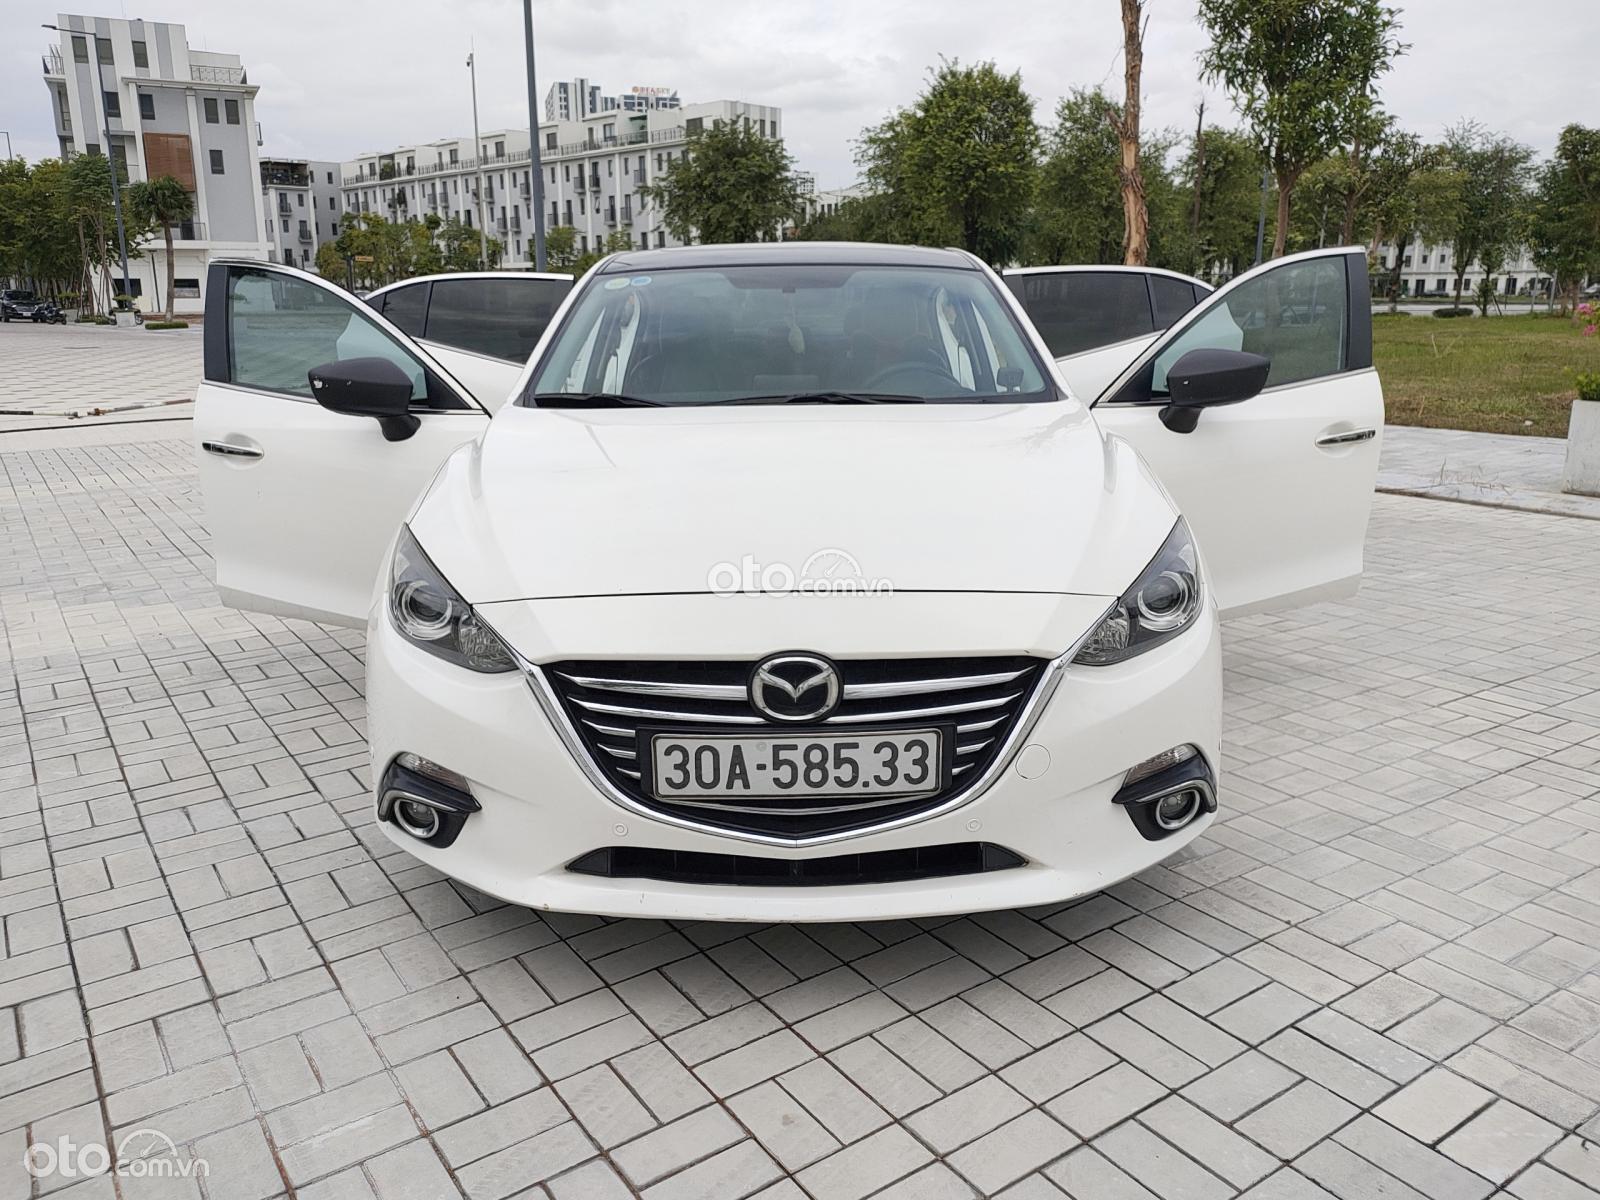 Mazda 3 sx 2015 odo zin 80.000 km, xe đẹp biển đẹp, giá êm, xem xe các bác ưng ngay, xe nguyên bản